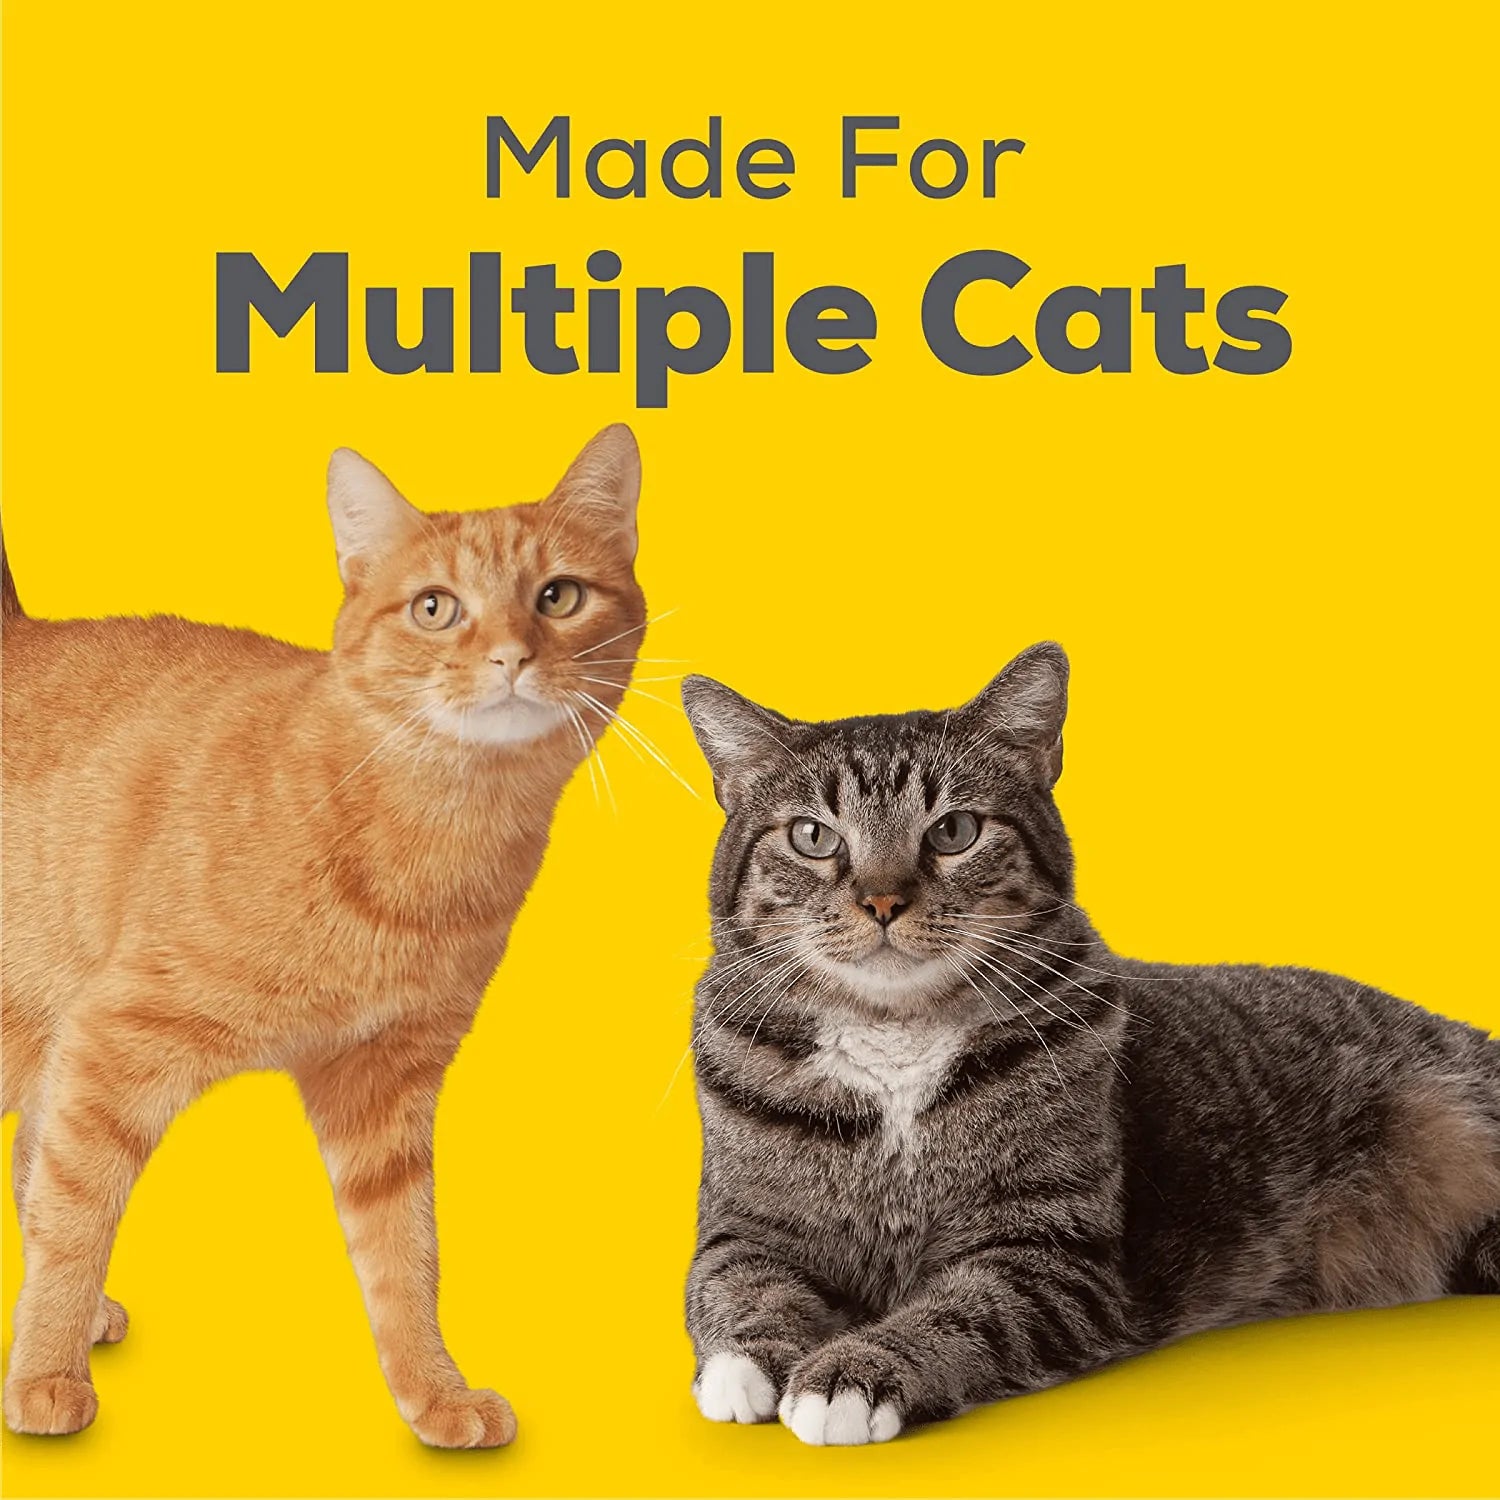 Purina Tidy Cats Breeze Refill Litter Pellets, 7 Pound (Pack of 4) Animals & Pet Supplies > Pet Supplies > Cat Supplies > Cat Litter Nestle Purina Pet   